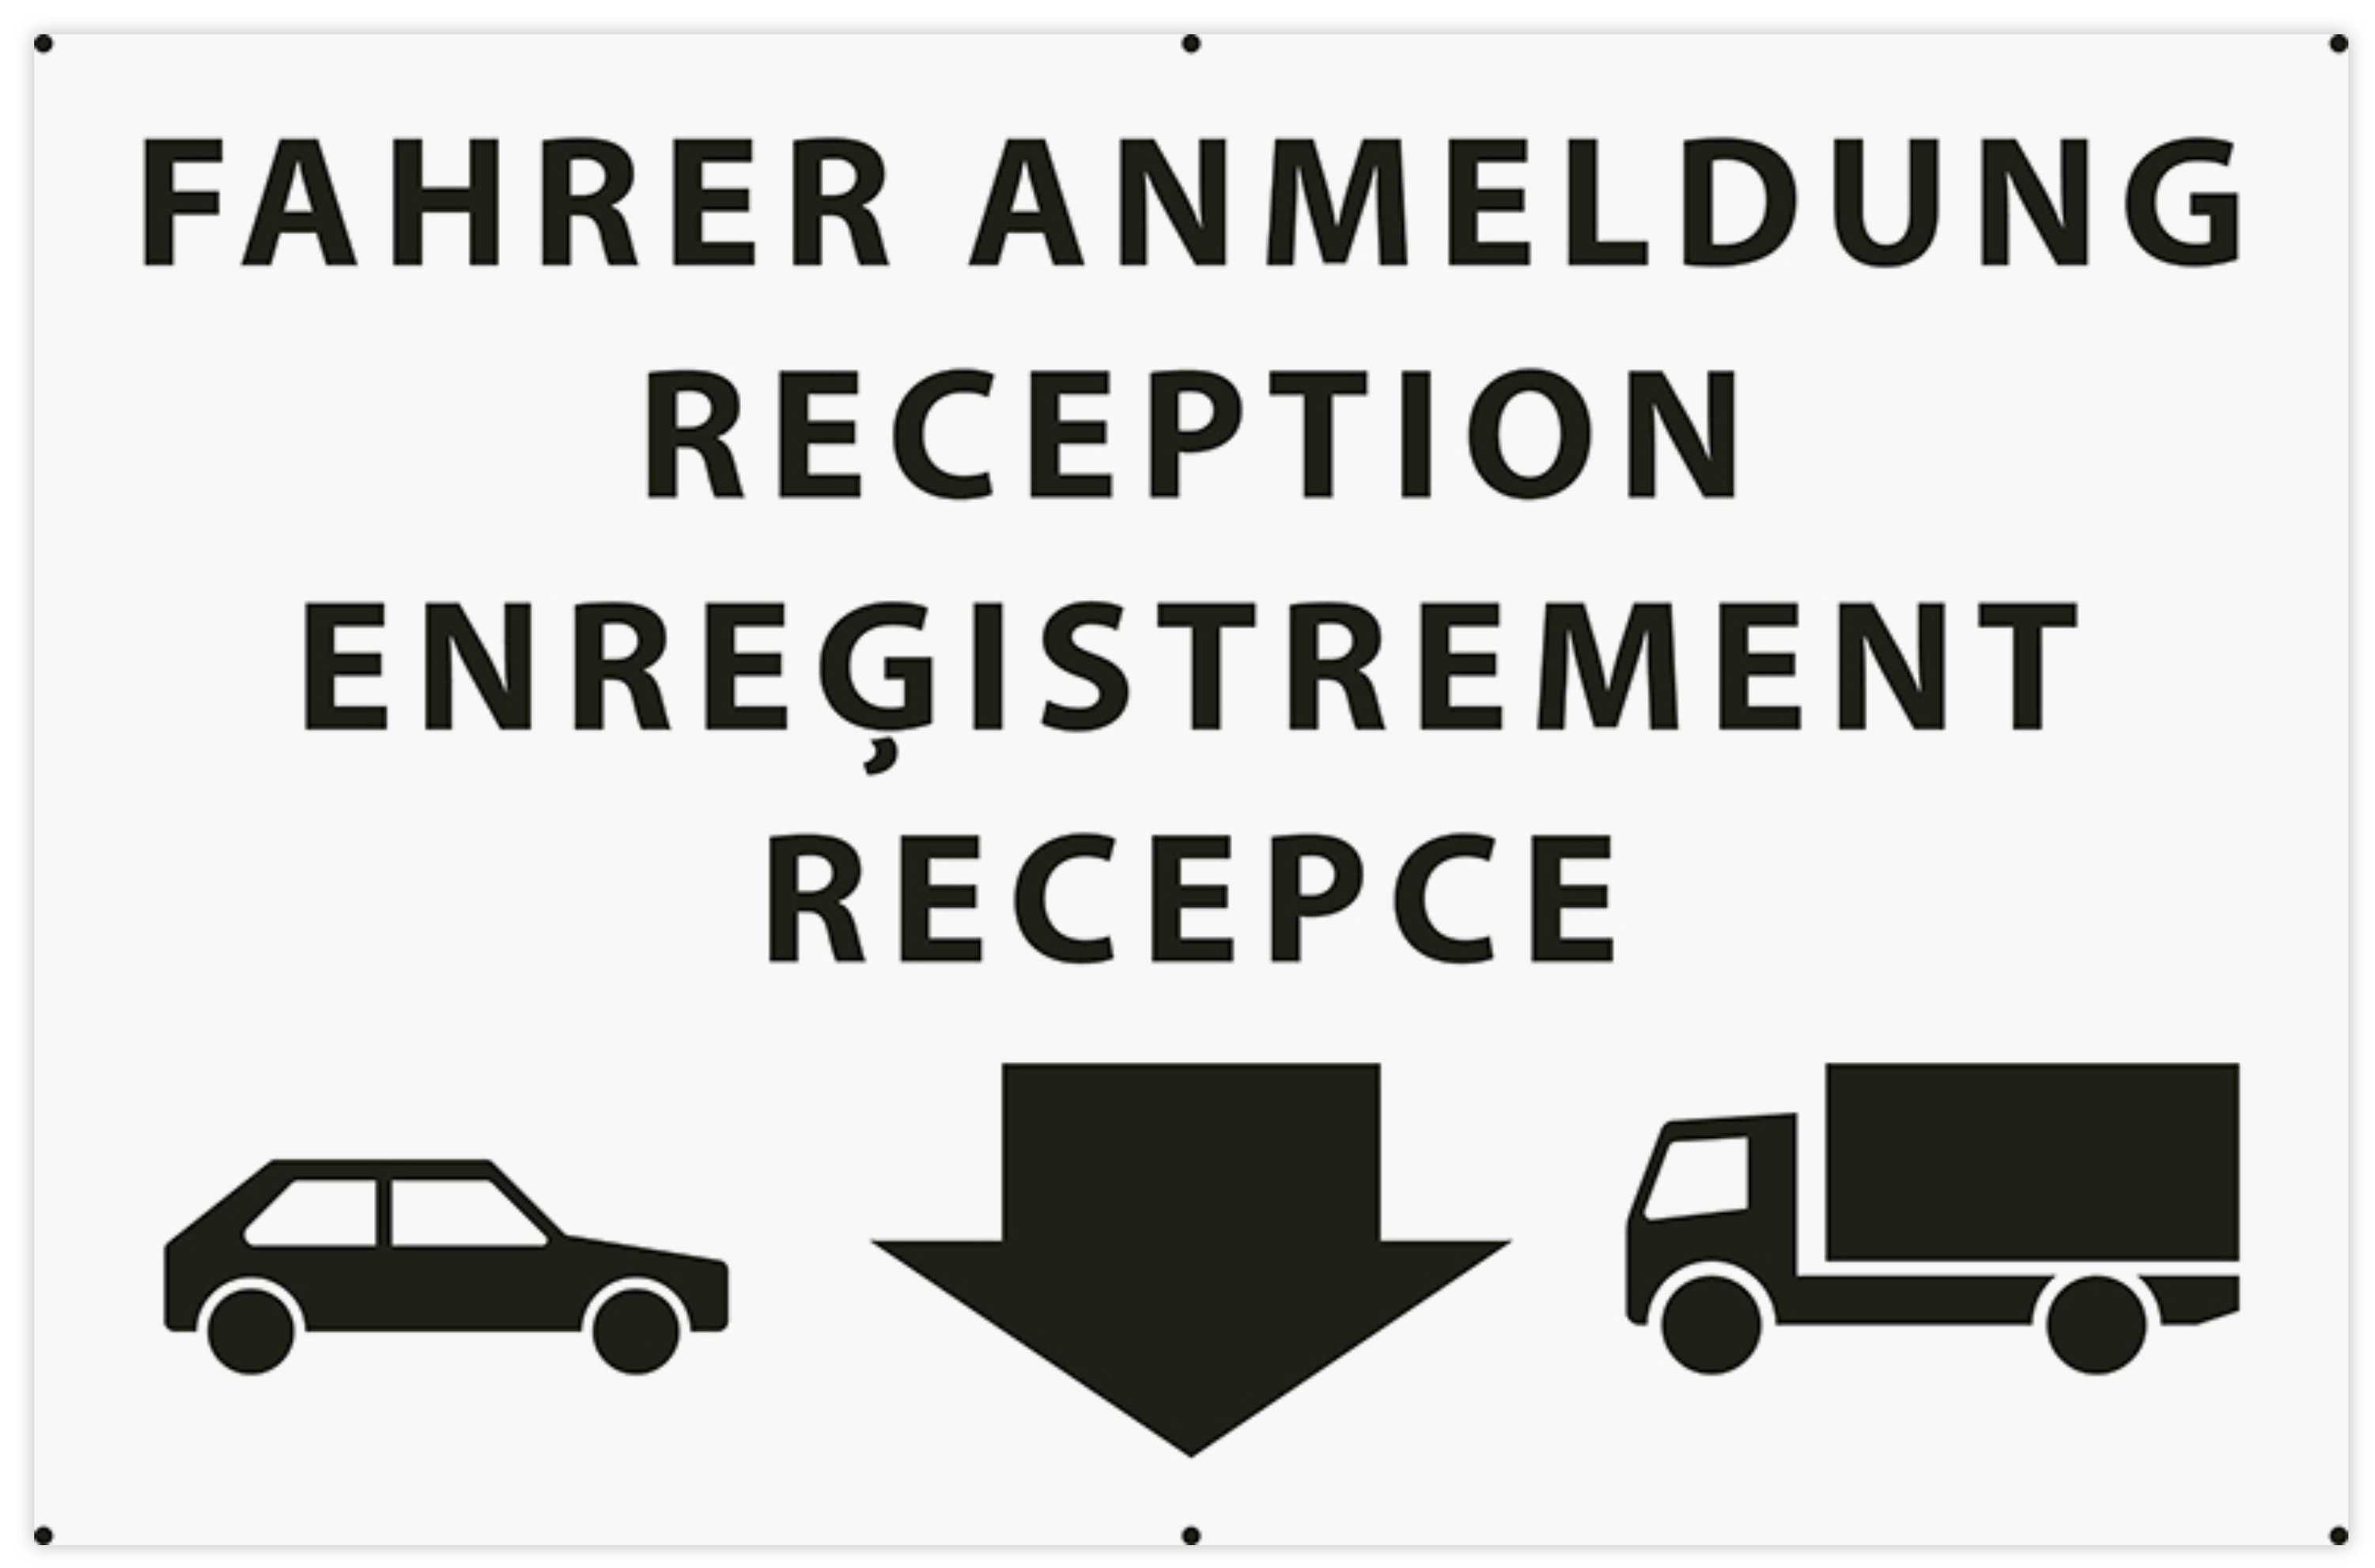 Neuer Entwurf als Beispiel der Vorgabe für ein Schild zur Fahreranmeldung